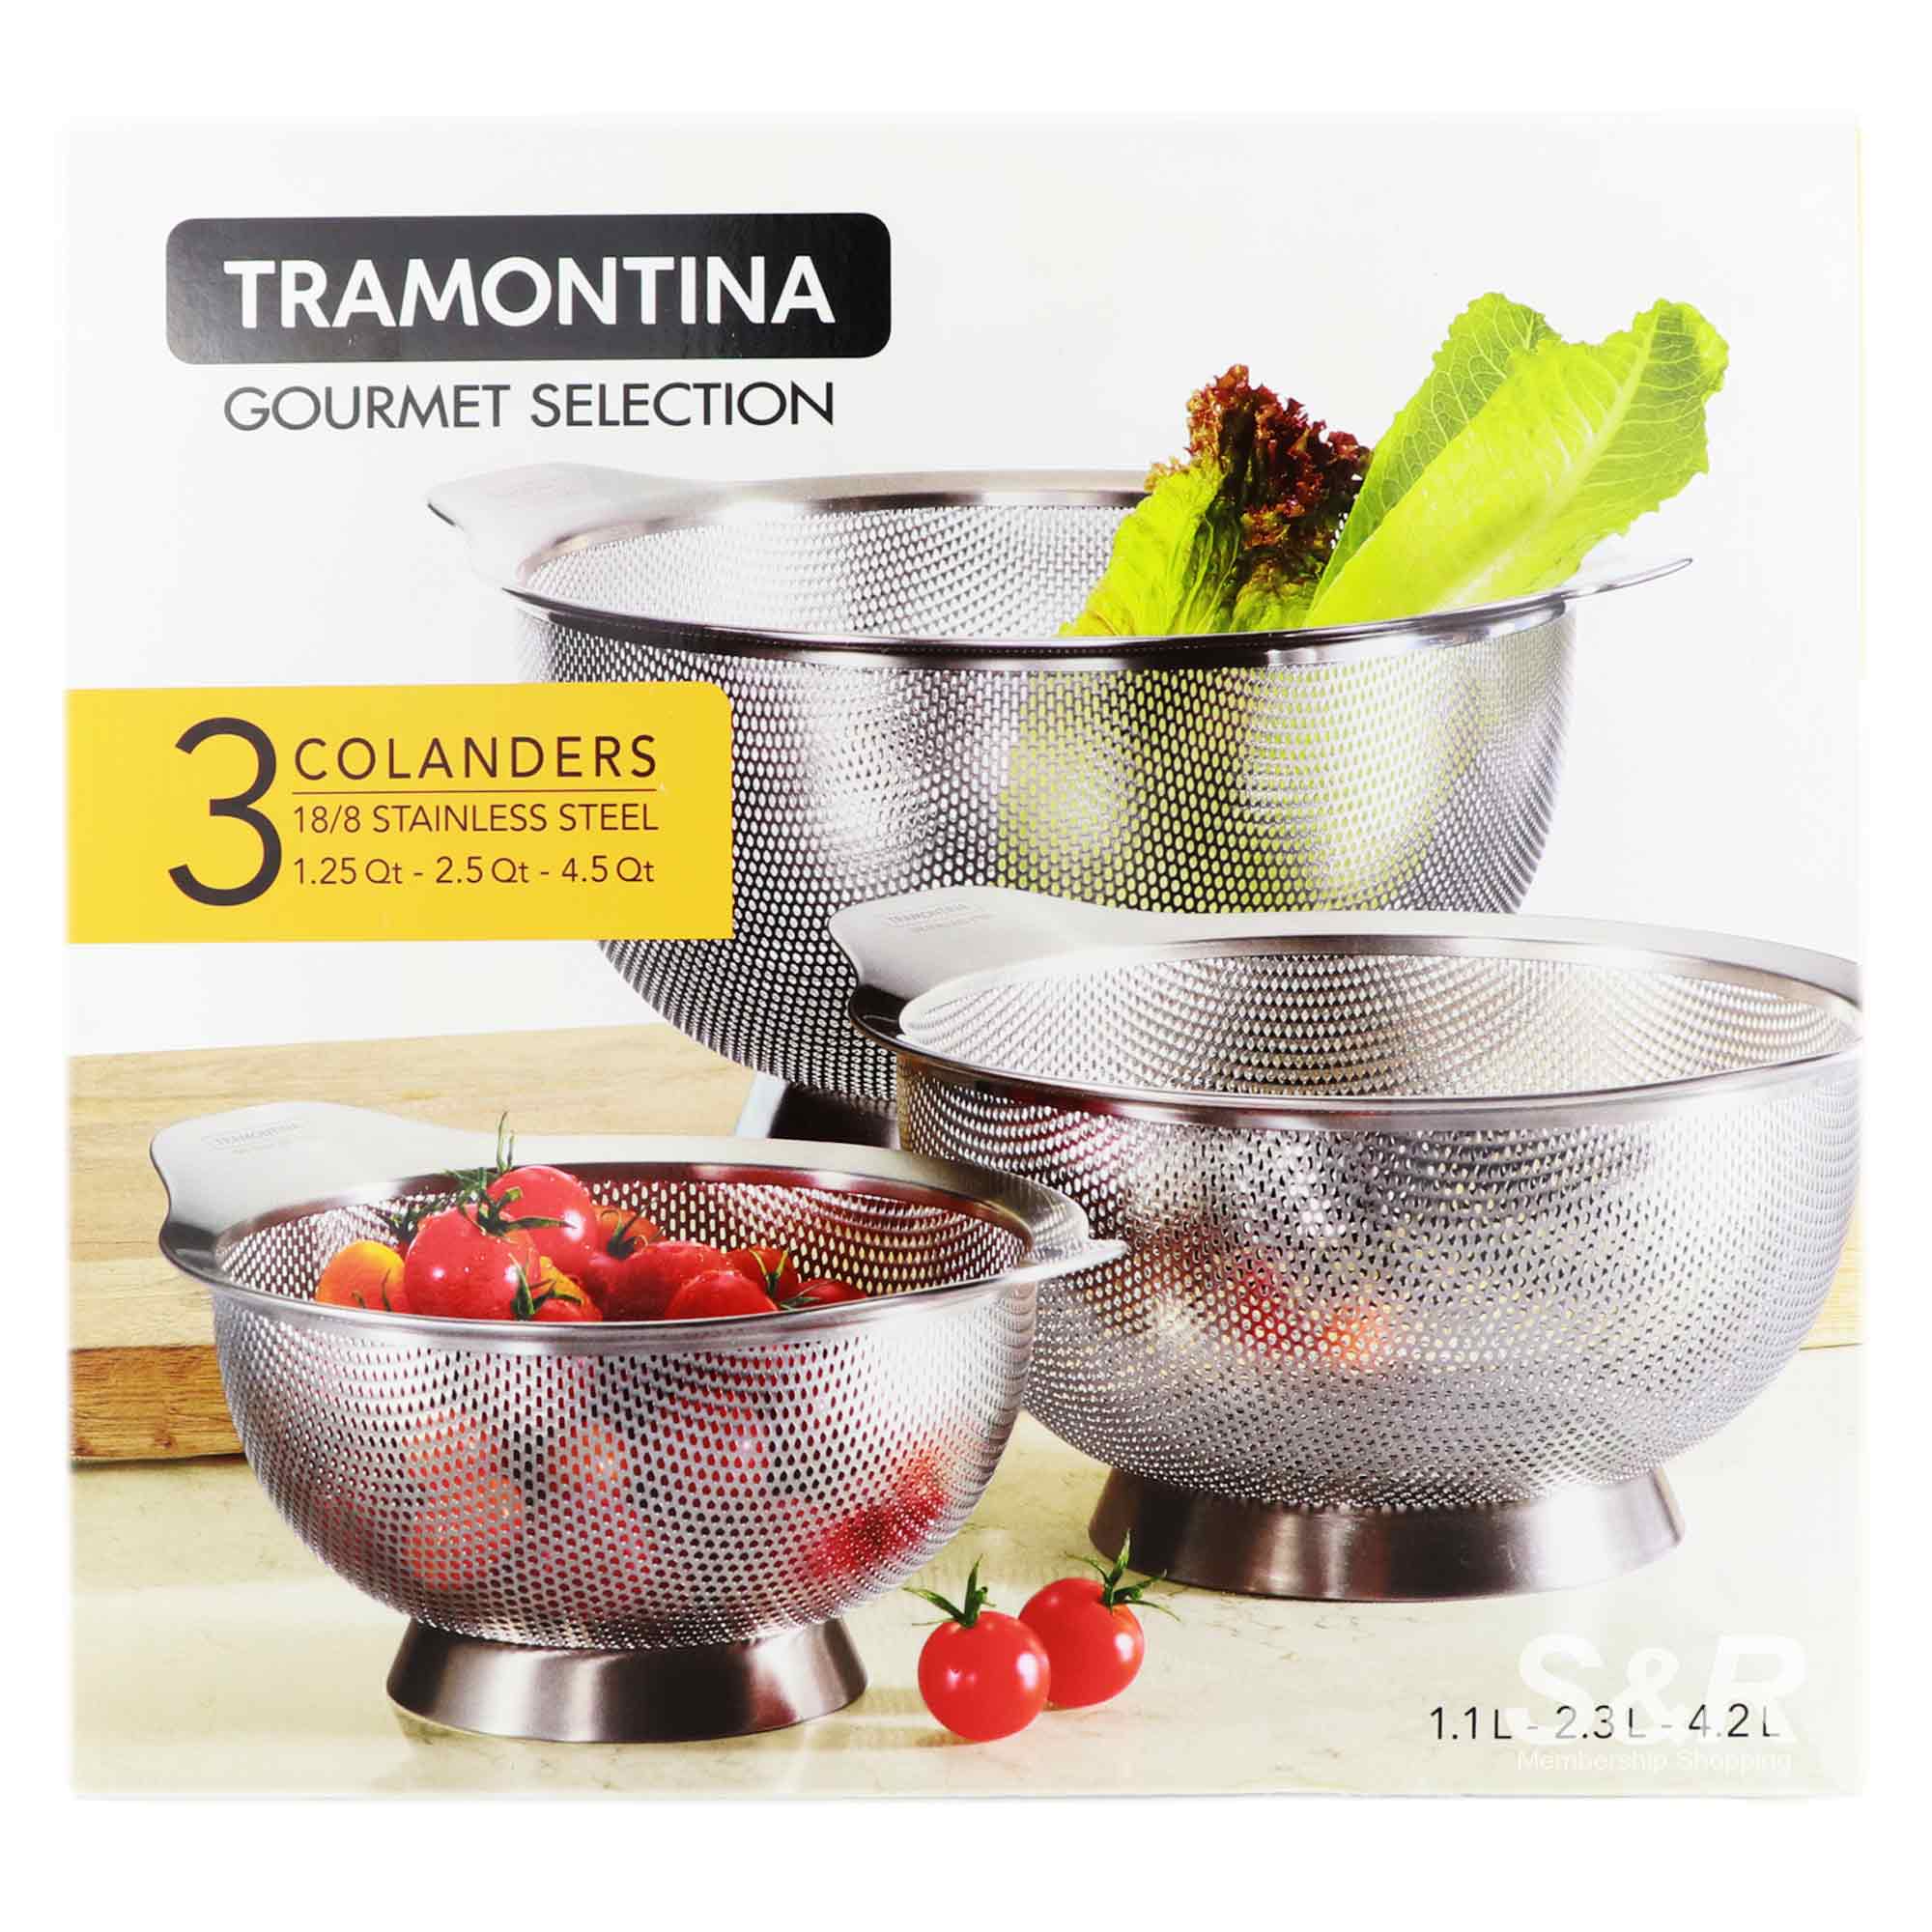 Tramontina Gourmet Selection Colanders 3pcs